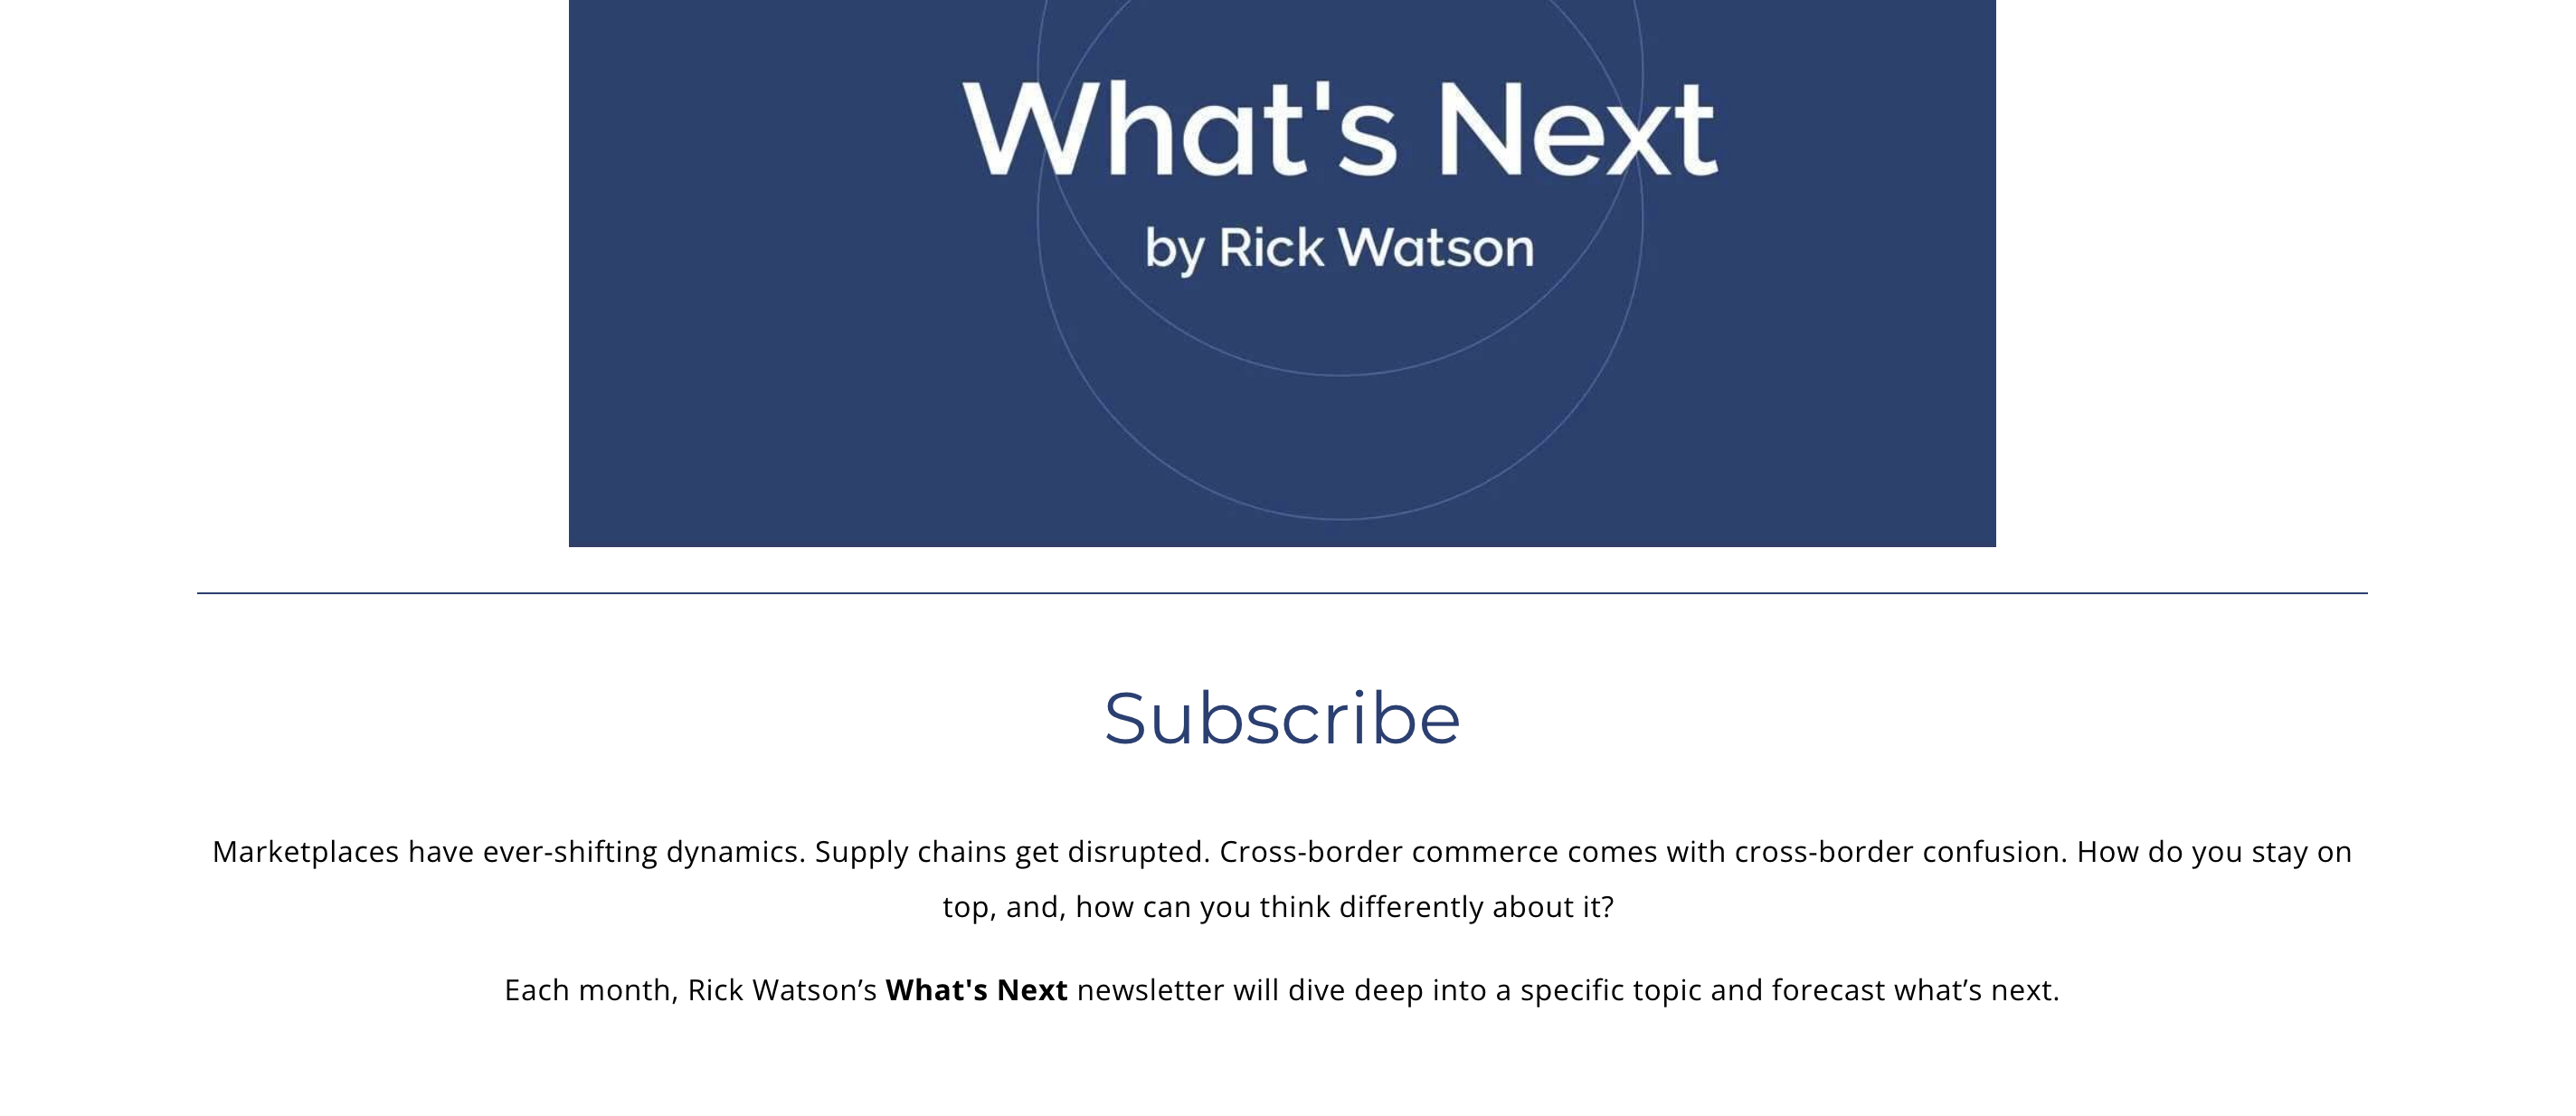 Rick Watson の e コマース ニュースレターは、e コマース マーチャント向けの独占レポートと今後のトレンドを提供する毎月のインサイトです。